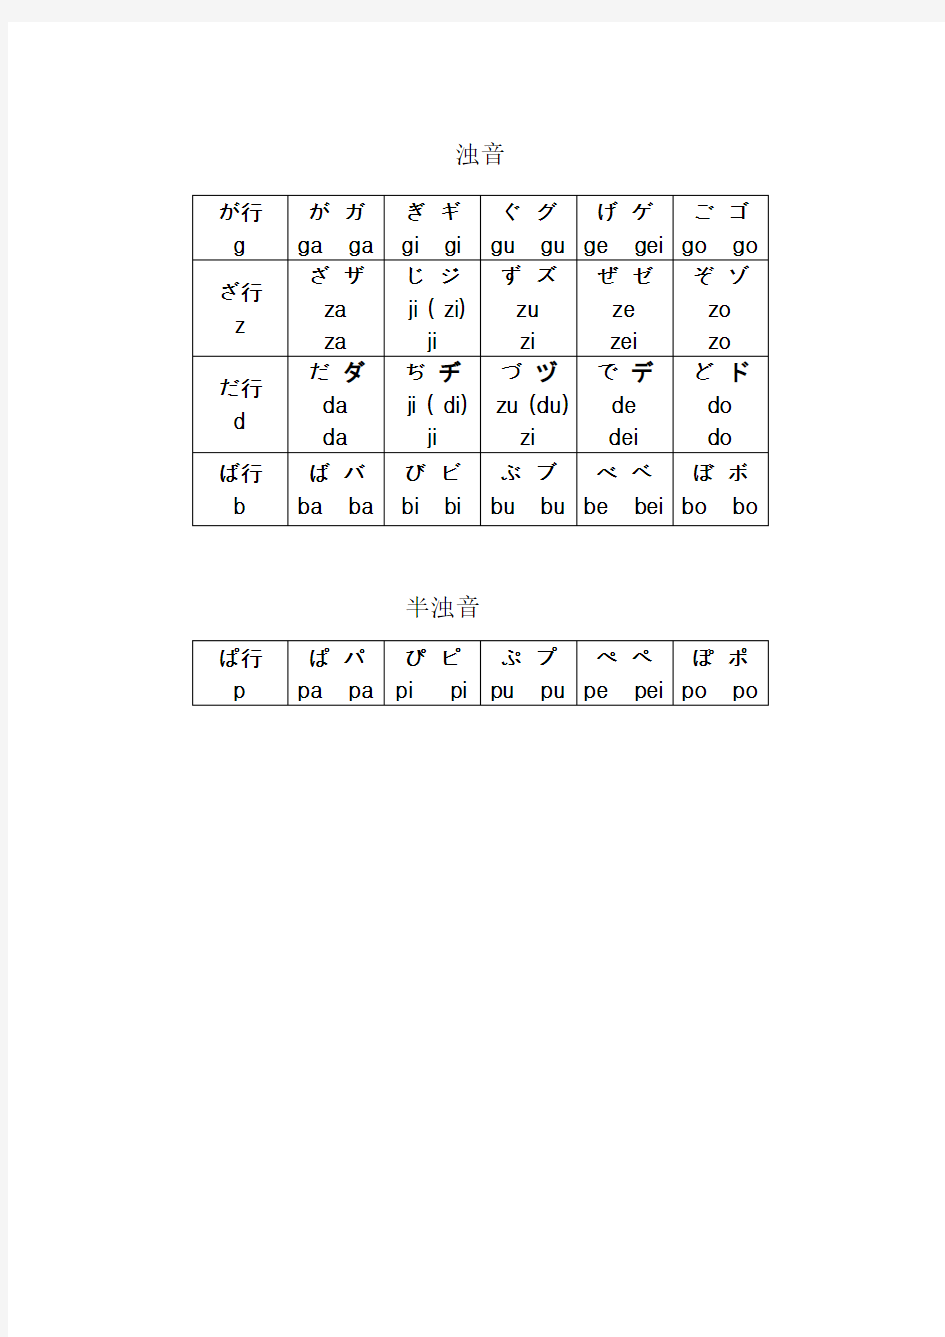 最新带汉语拼音的五十音图表